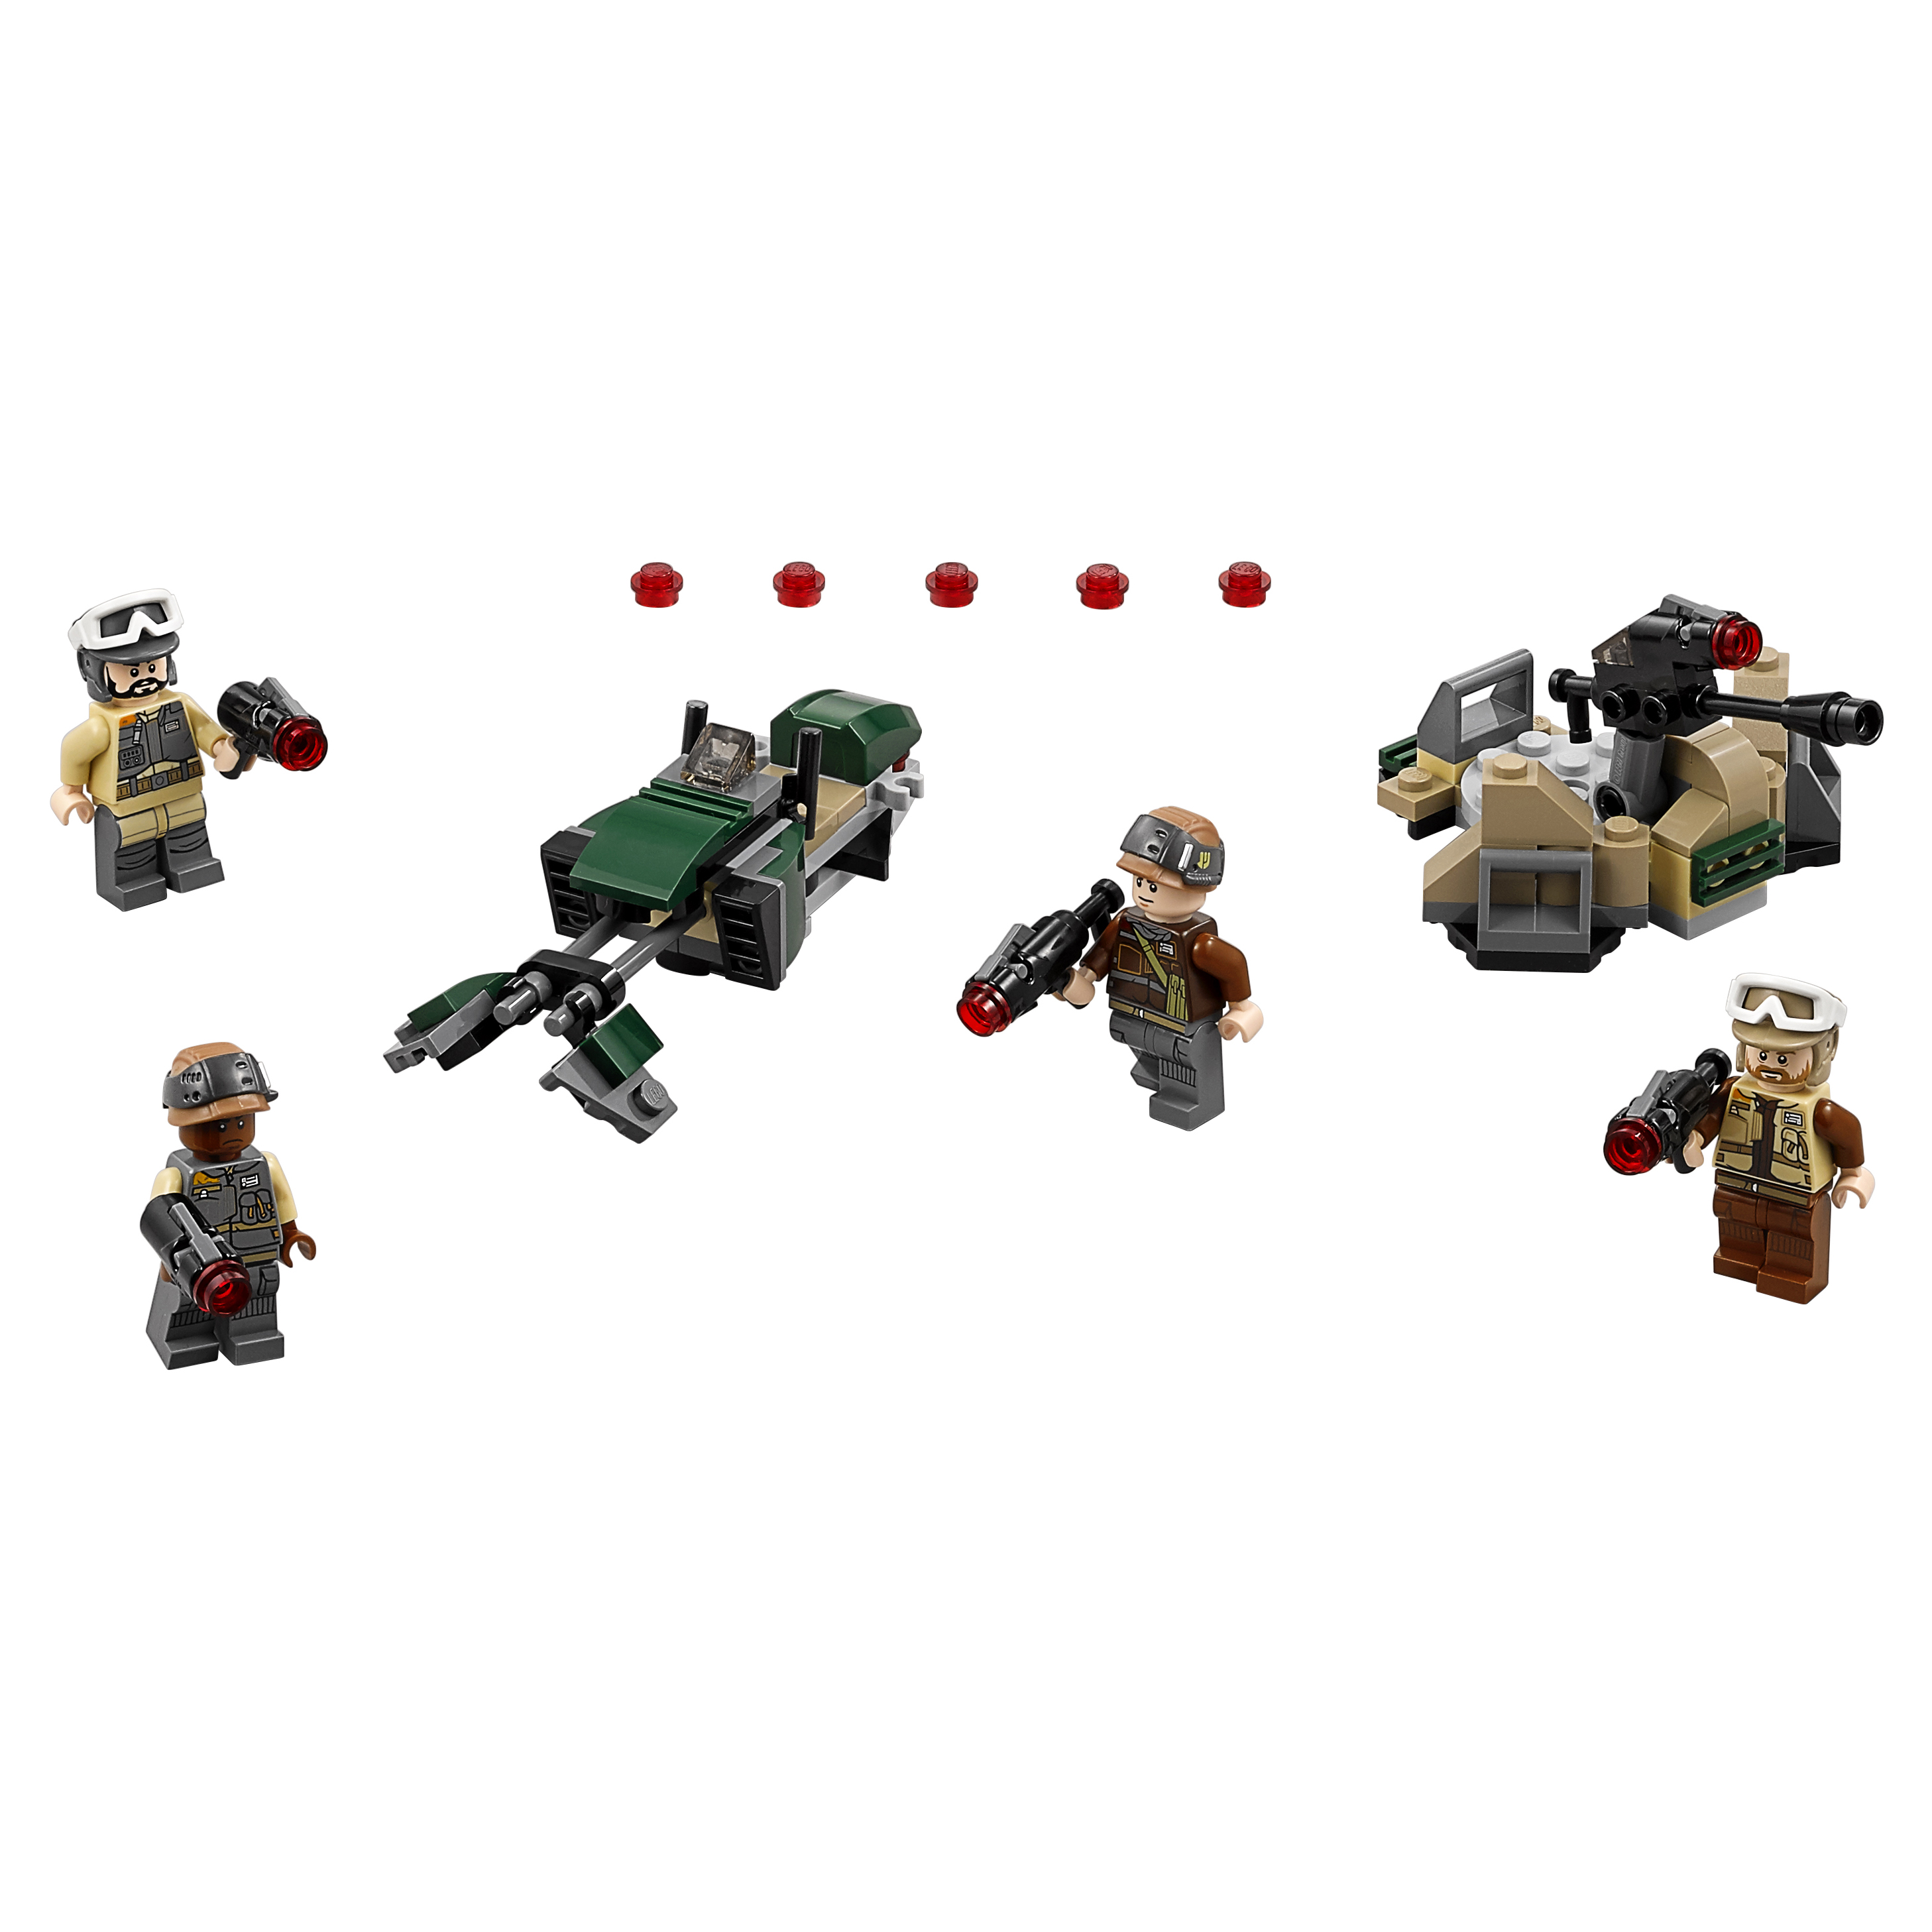 Конструктор LEGO Star Wars Боевой набор Повстанцев (75164) конструктор lego star wars призрак 75127